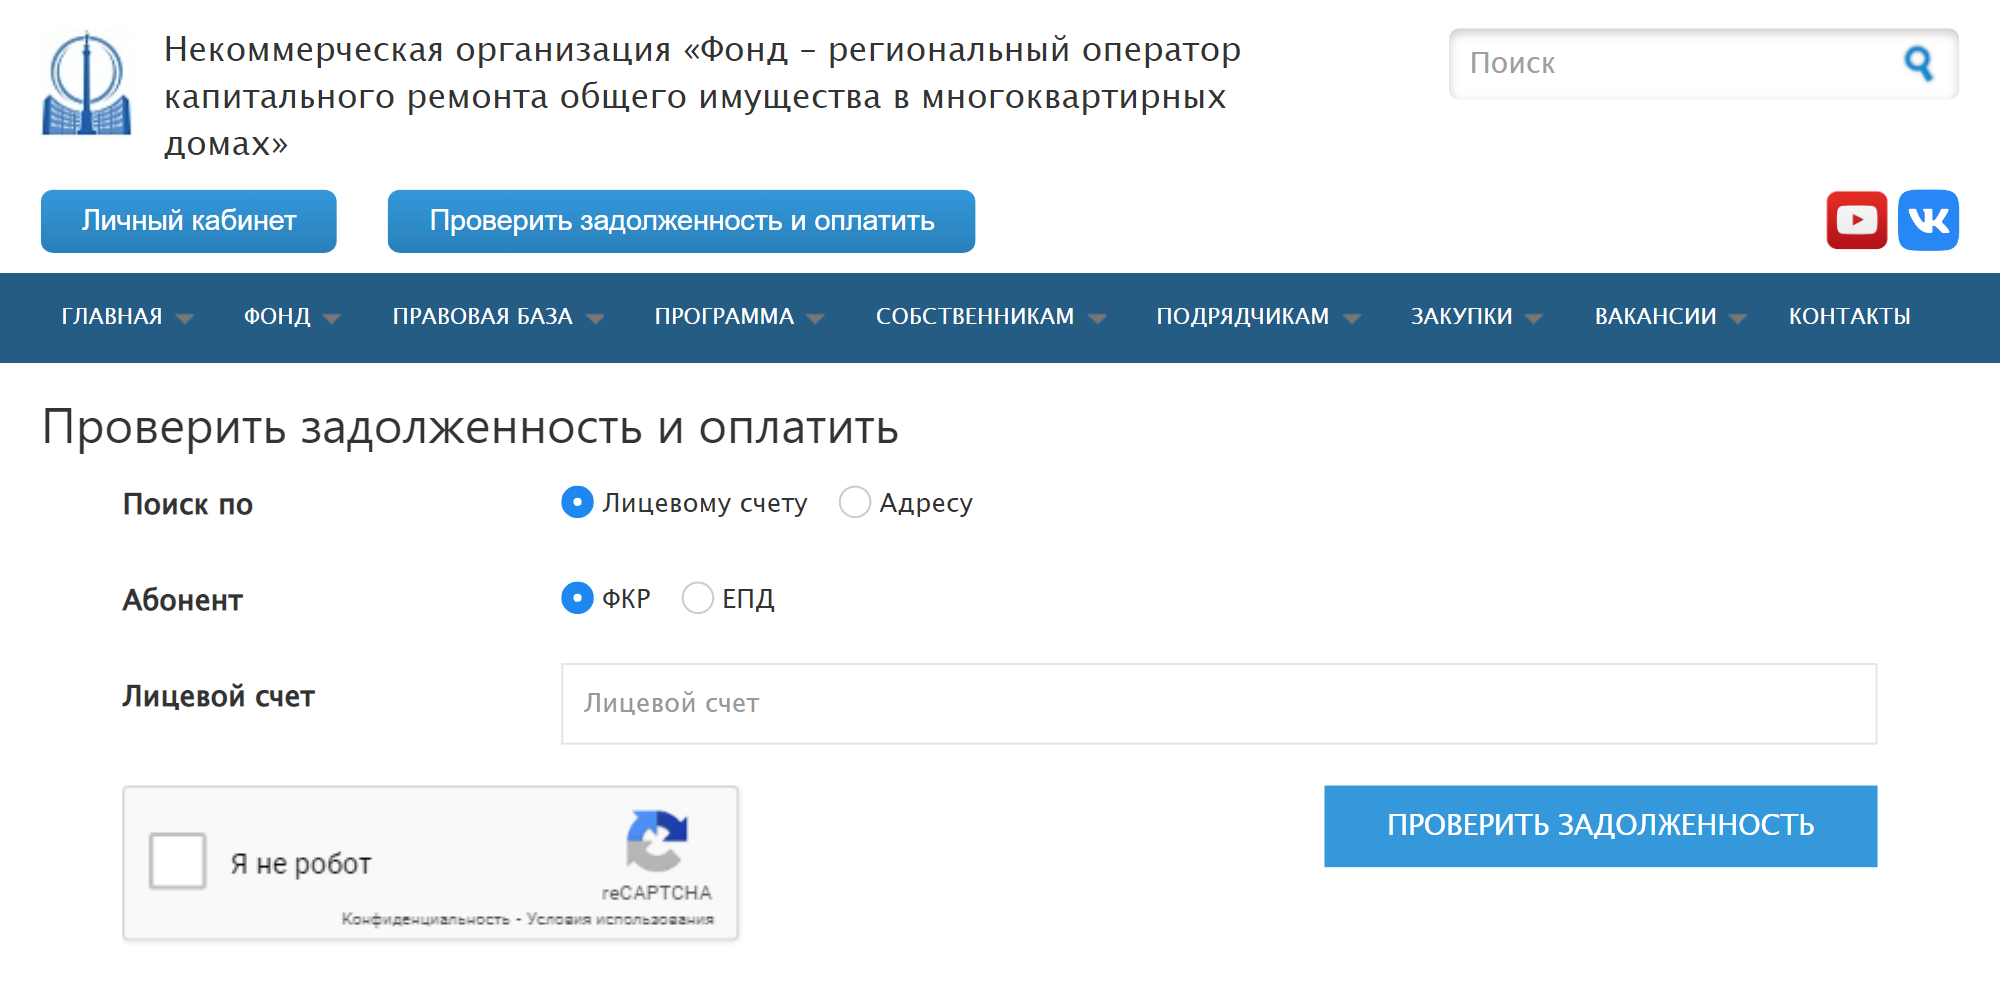 Например, можно ввести адрес и проверить задолженность в Петербурге на сайте местного регионального оператора